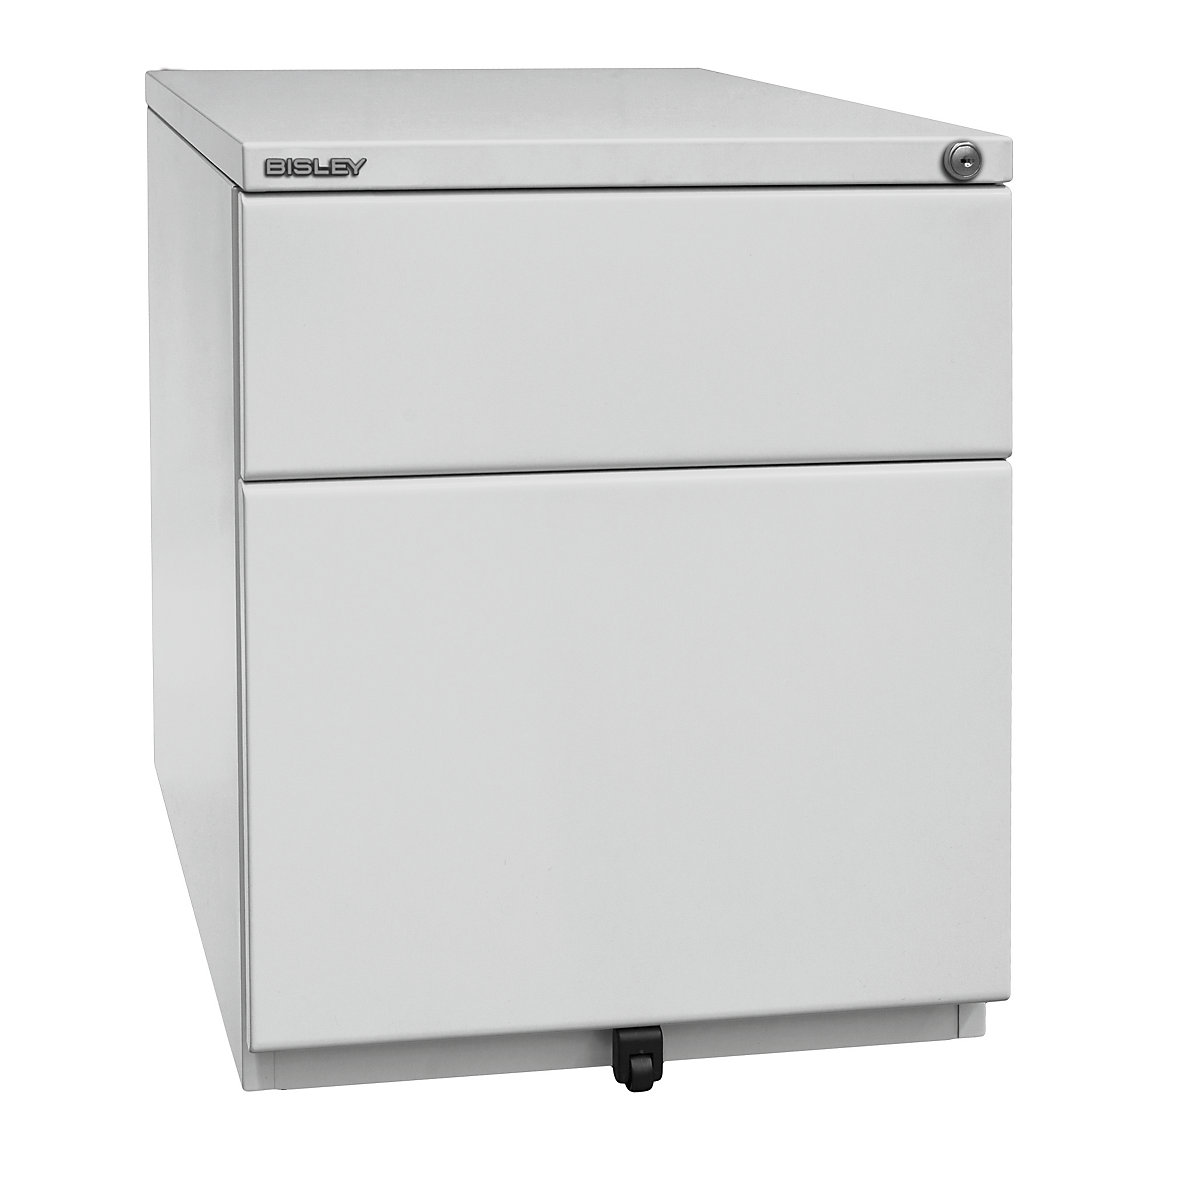 OBA mobile pedestal – BISLEY, 1 drawer, 1 suspension file drawer, light grey-6